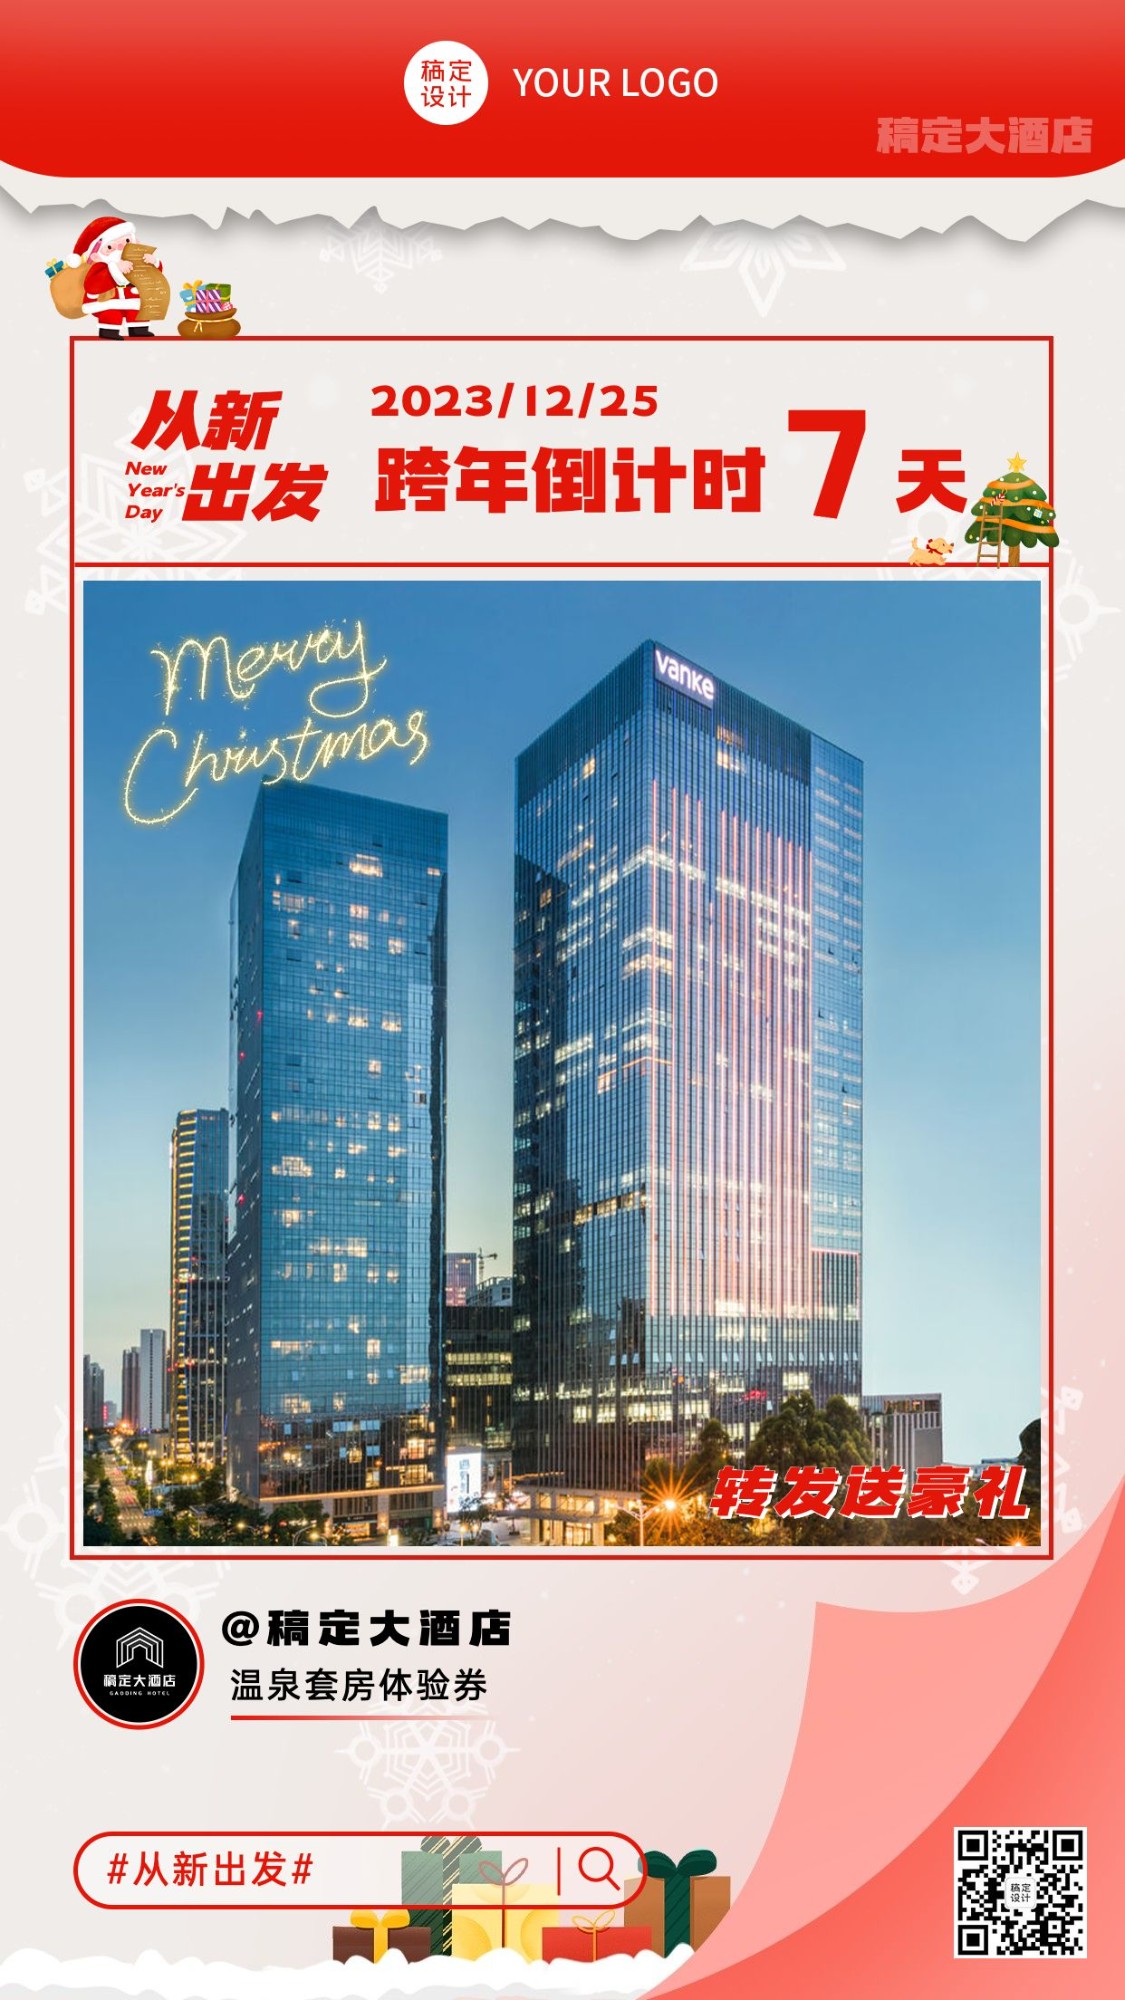 旅游圣诞元旦新年跨年倒计时日历酒店促销手机海报预览效果